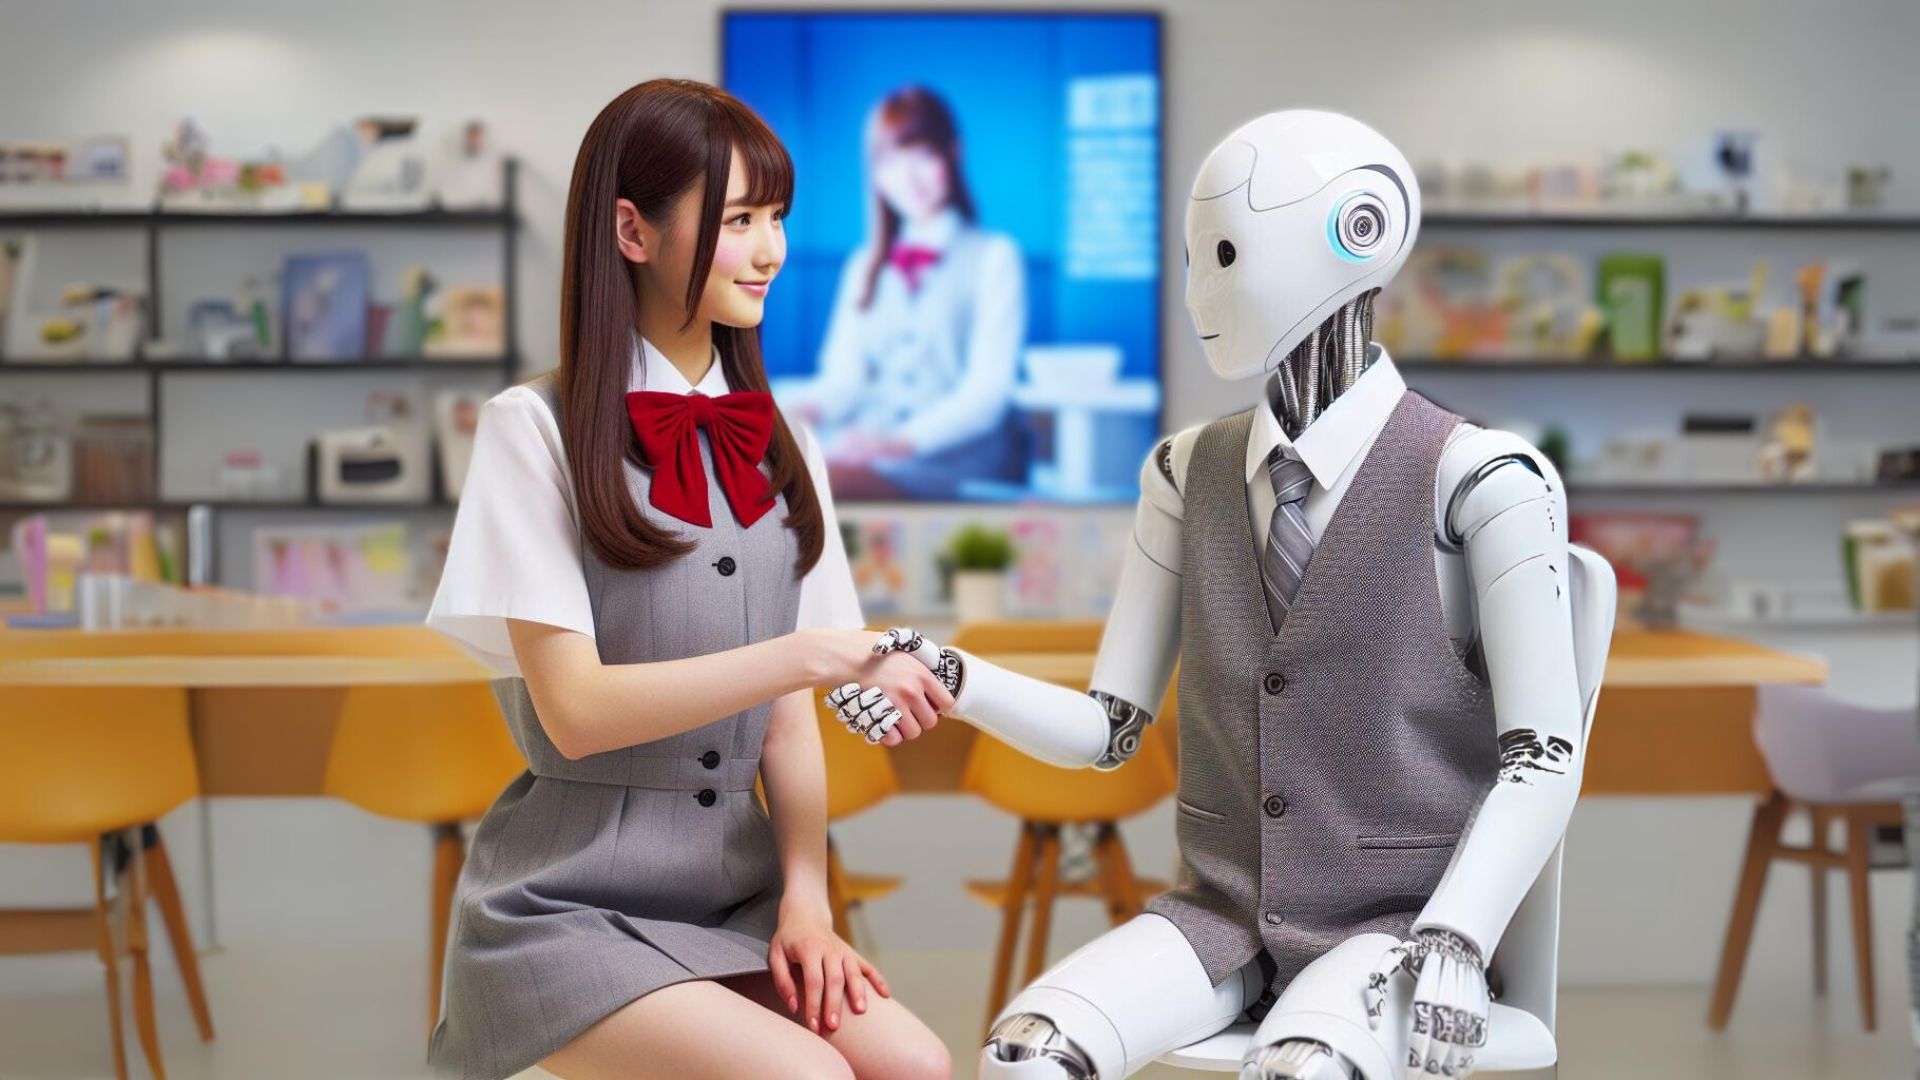 Human-AI Interactions